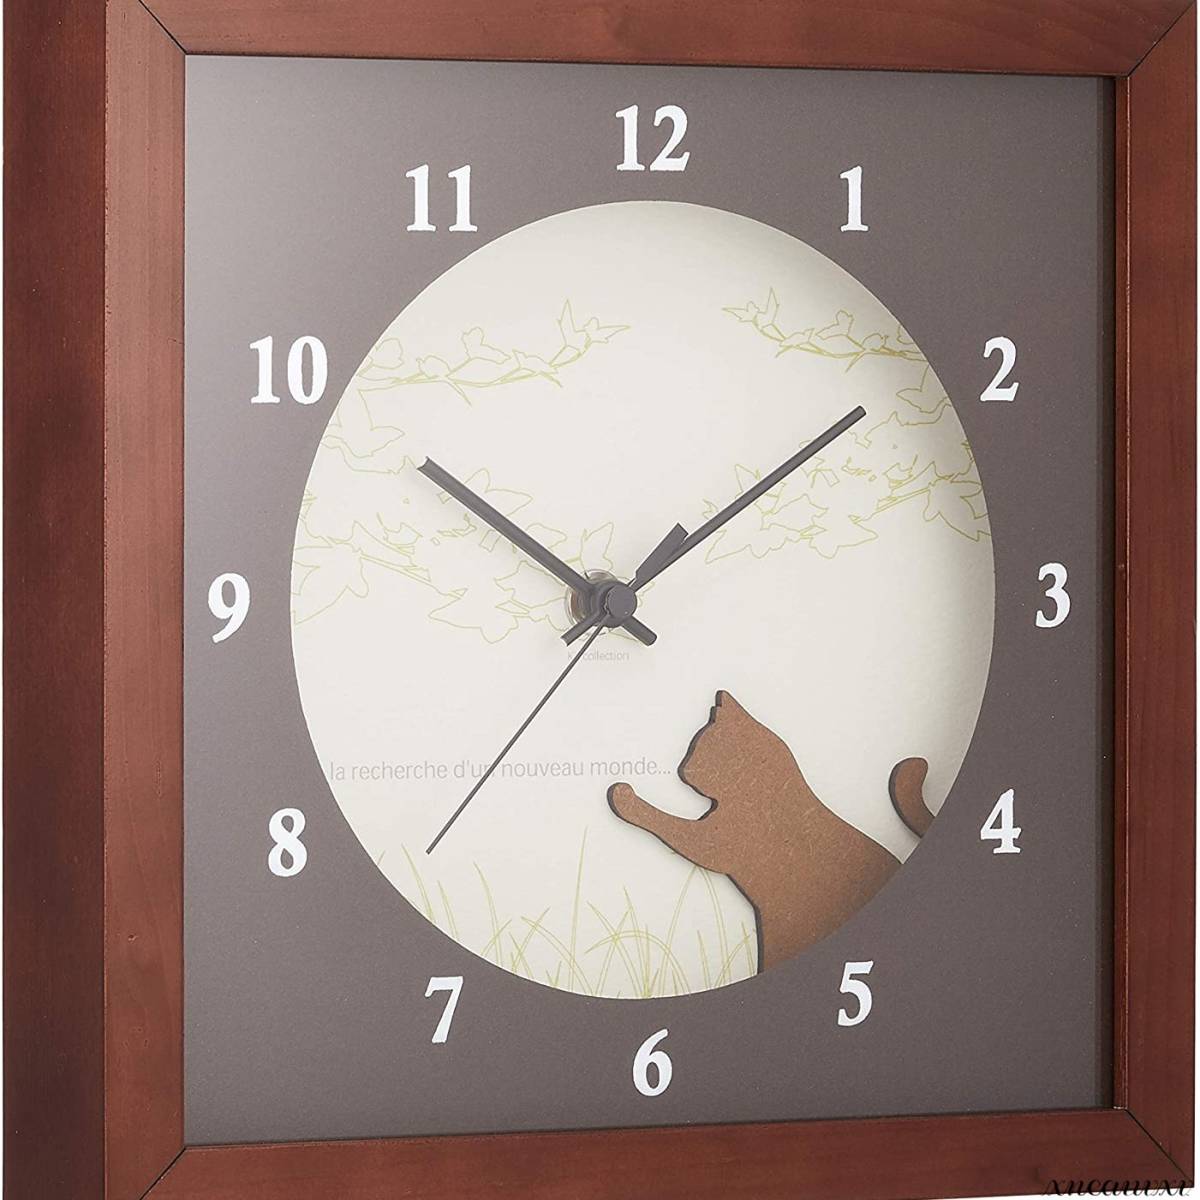 お洒落な ネコの掛け時計 ブラウン ハンドメイド 木製 スイープ インテリア かわいい デザイン オシャレ 雑貨 モダン 時計 クロック